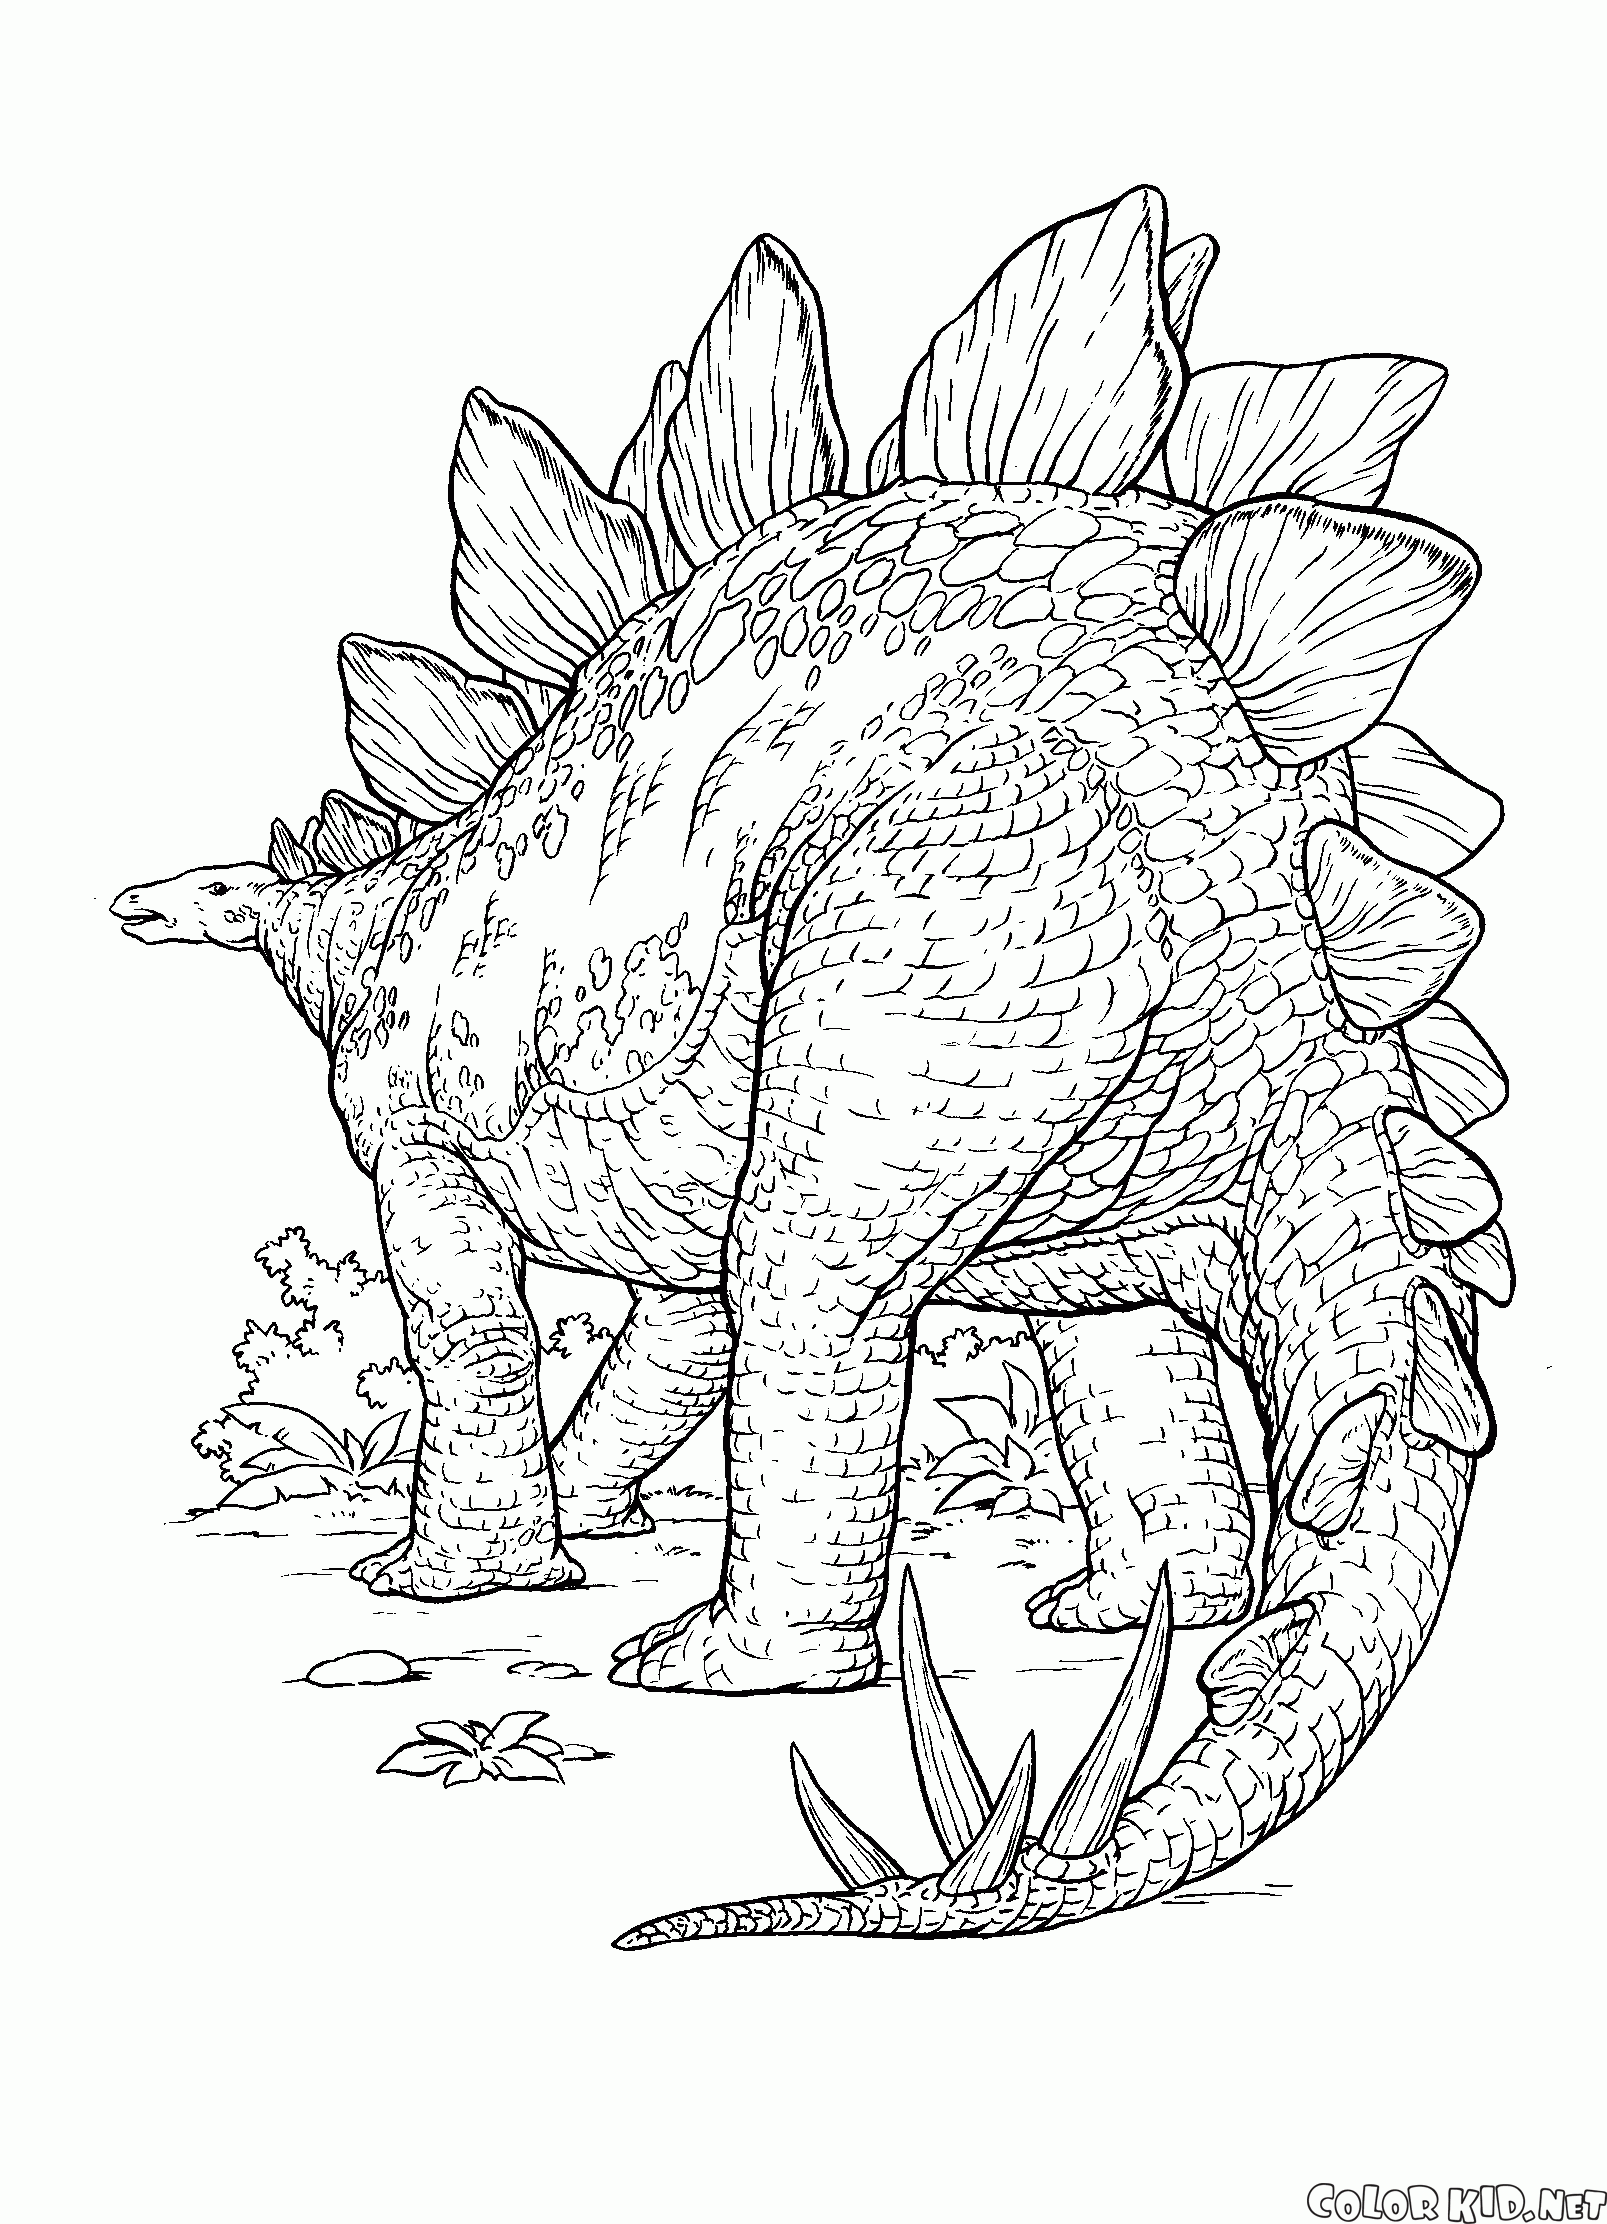 Dinozaur z ostrymi cierniami